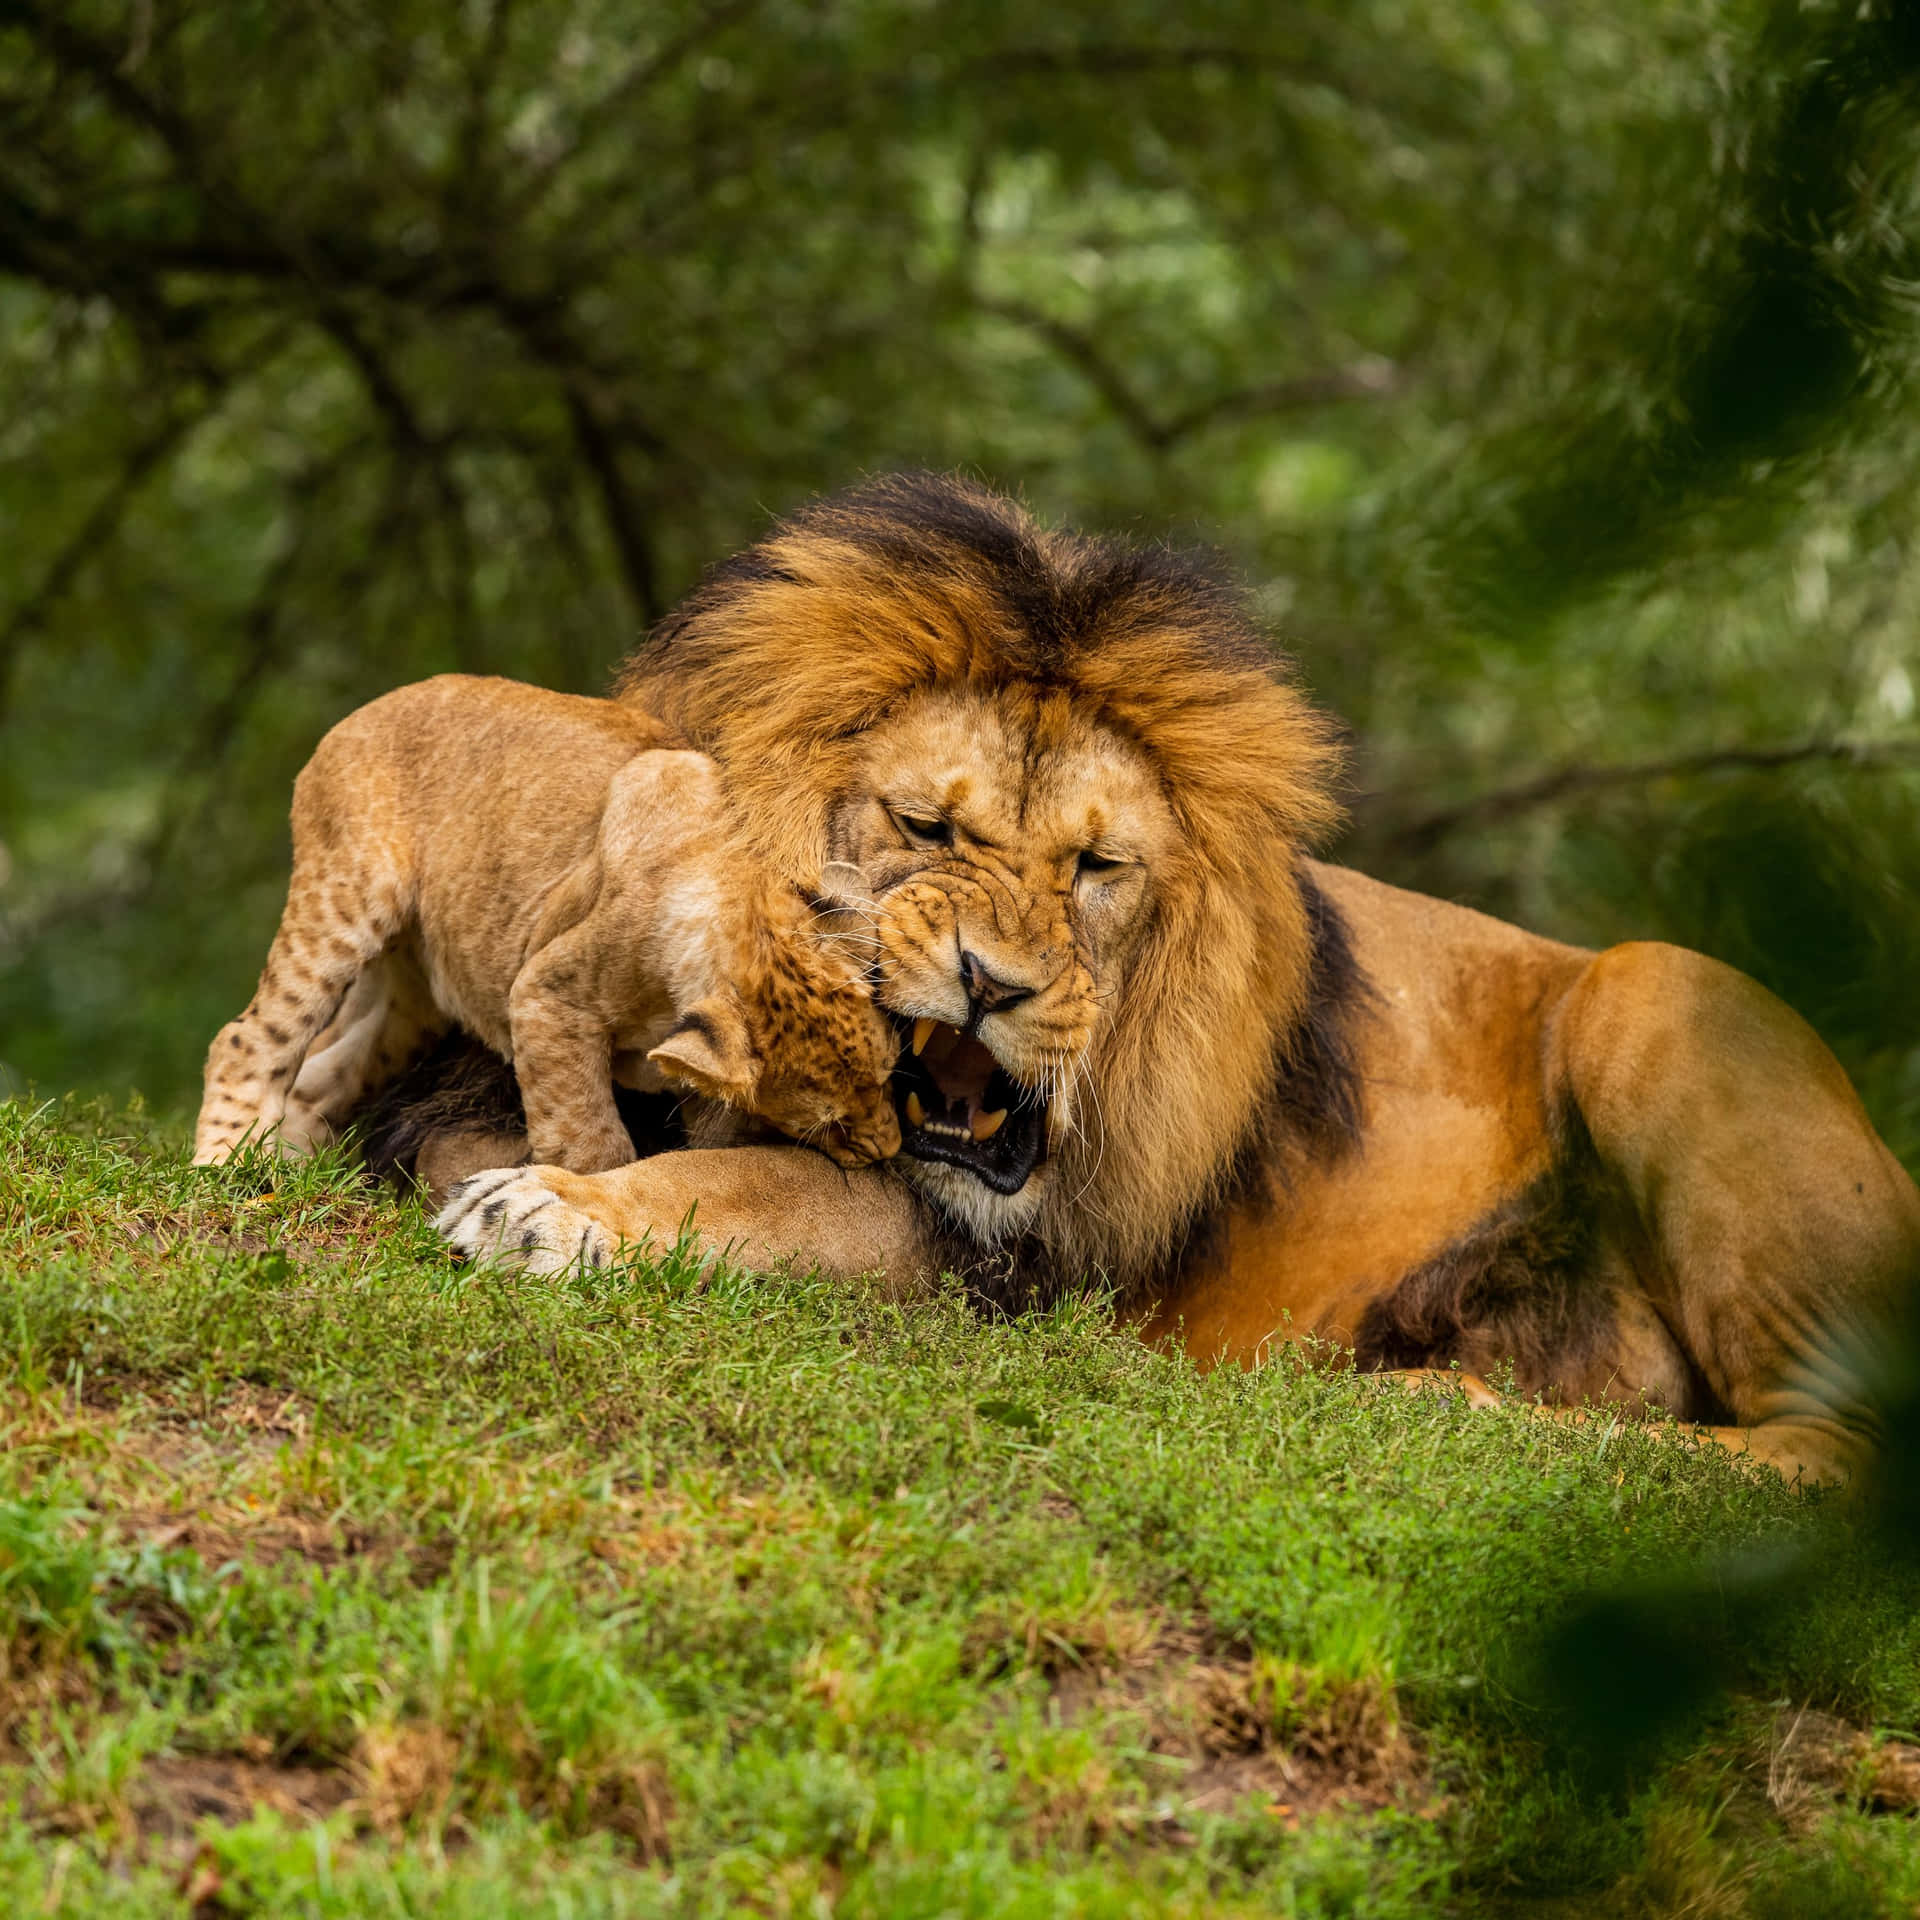 Lionand Cub Affectionate Moment.jpg Wallpaper